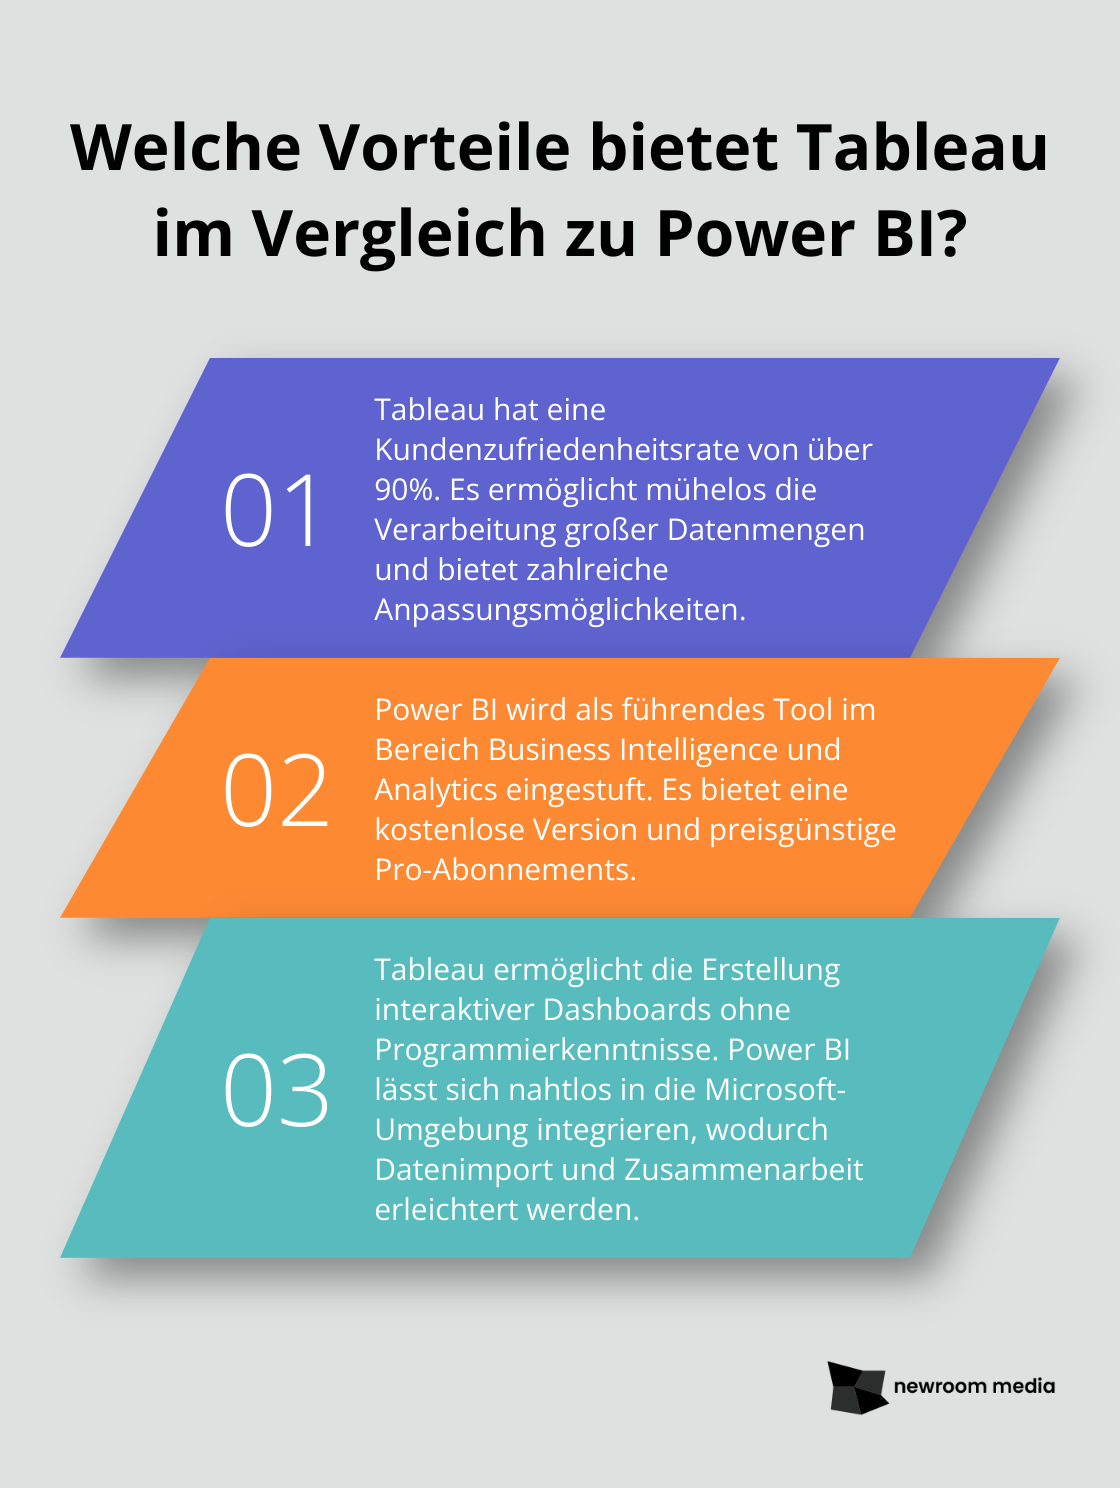 Fact - Welche Vorteile bietet Tableau im Vergleich zu Power BI?